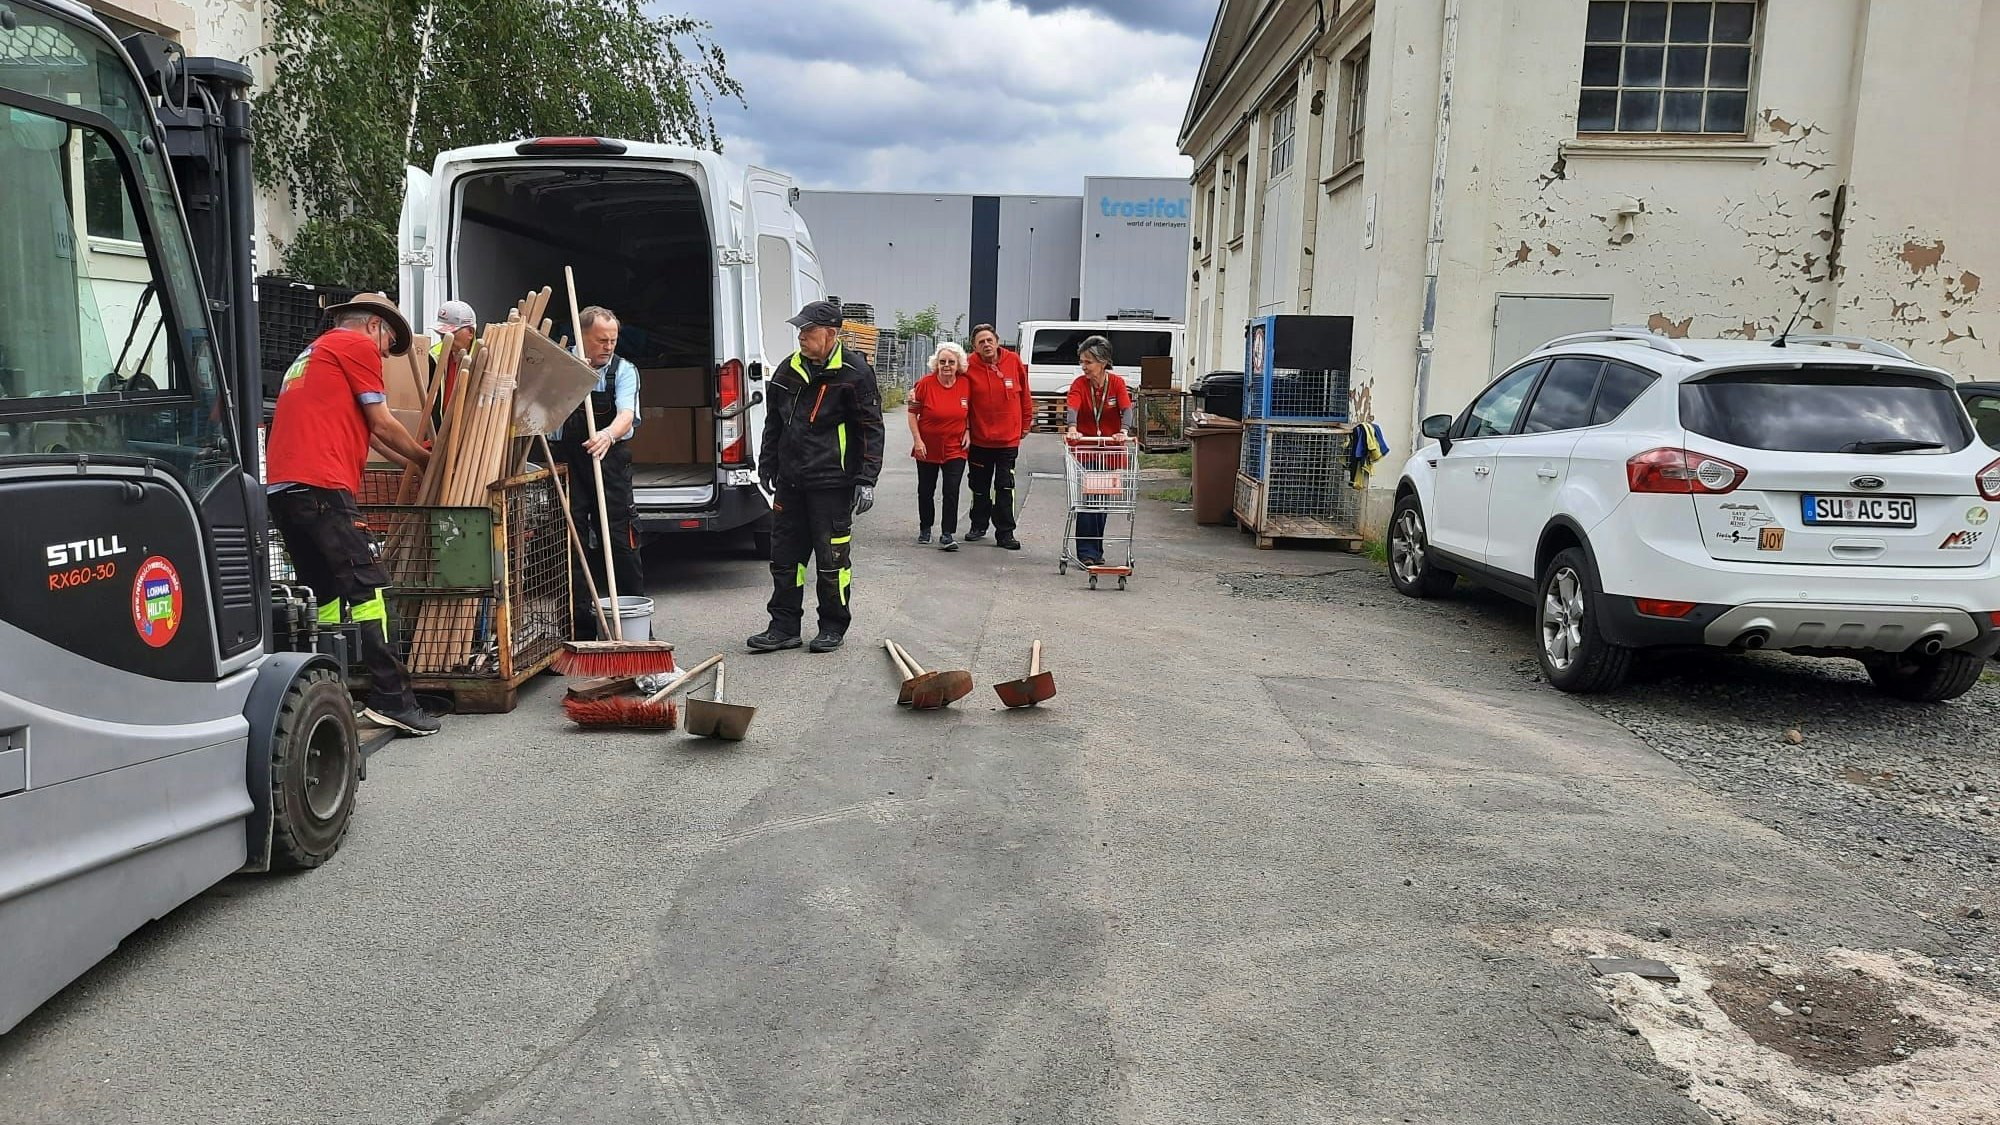 Die Intiative „Lohmar hilft“ hat am Mittwoch einen ersten Transport mit Hilfsgütern vom Lager in Troisdorf aus auf den Weg nach Slowenien gebracht